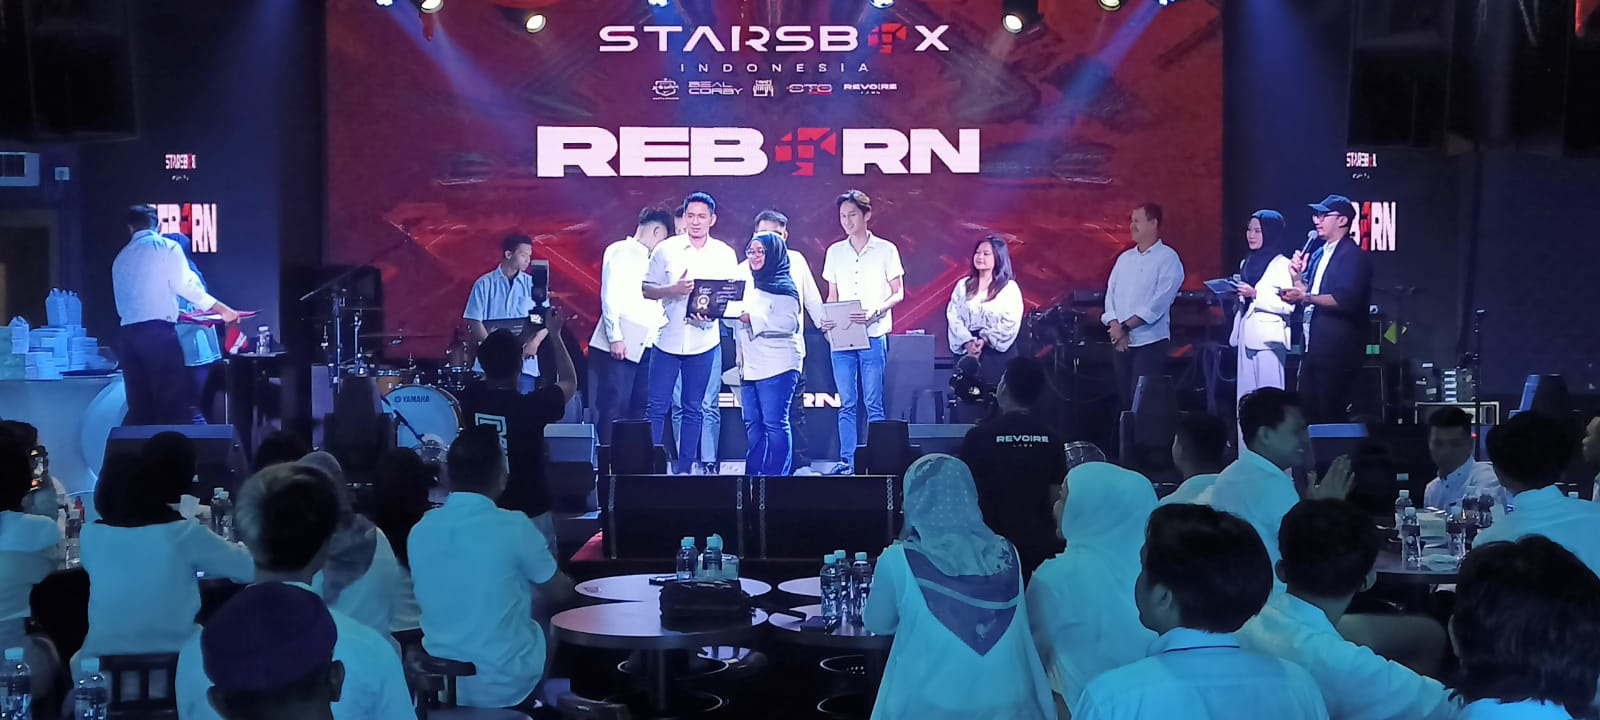 Starsbox Indonesia, Reborn dengan Konsep Lifestyle Pria